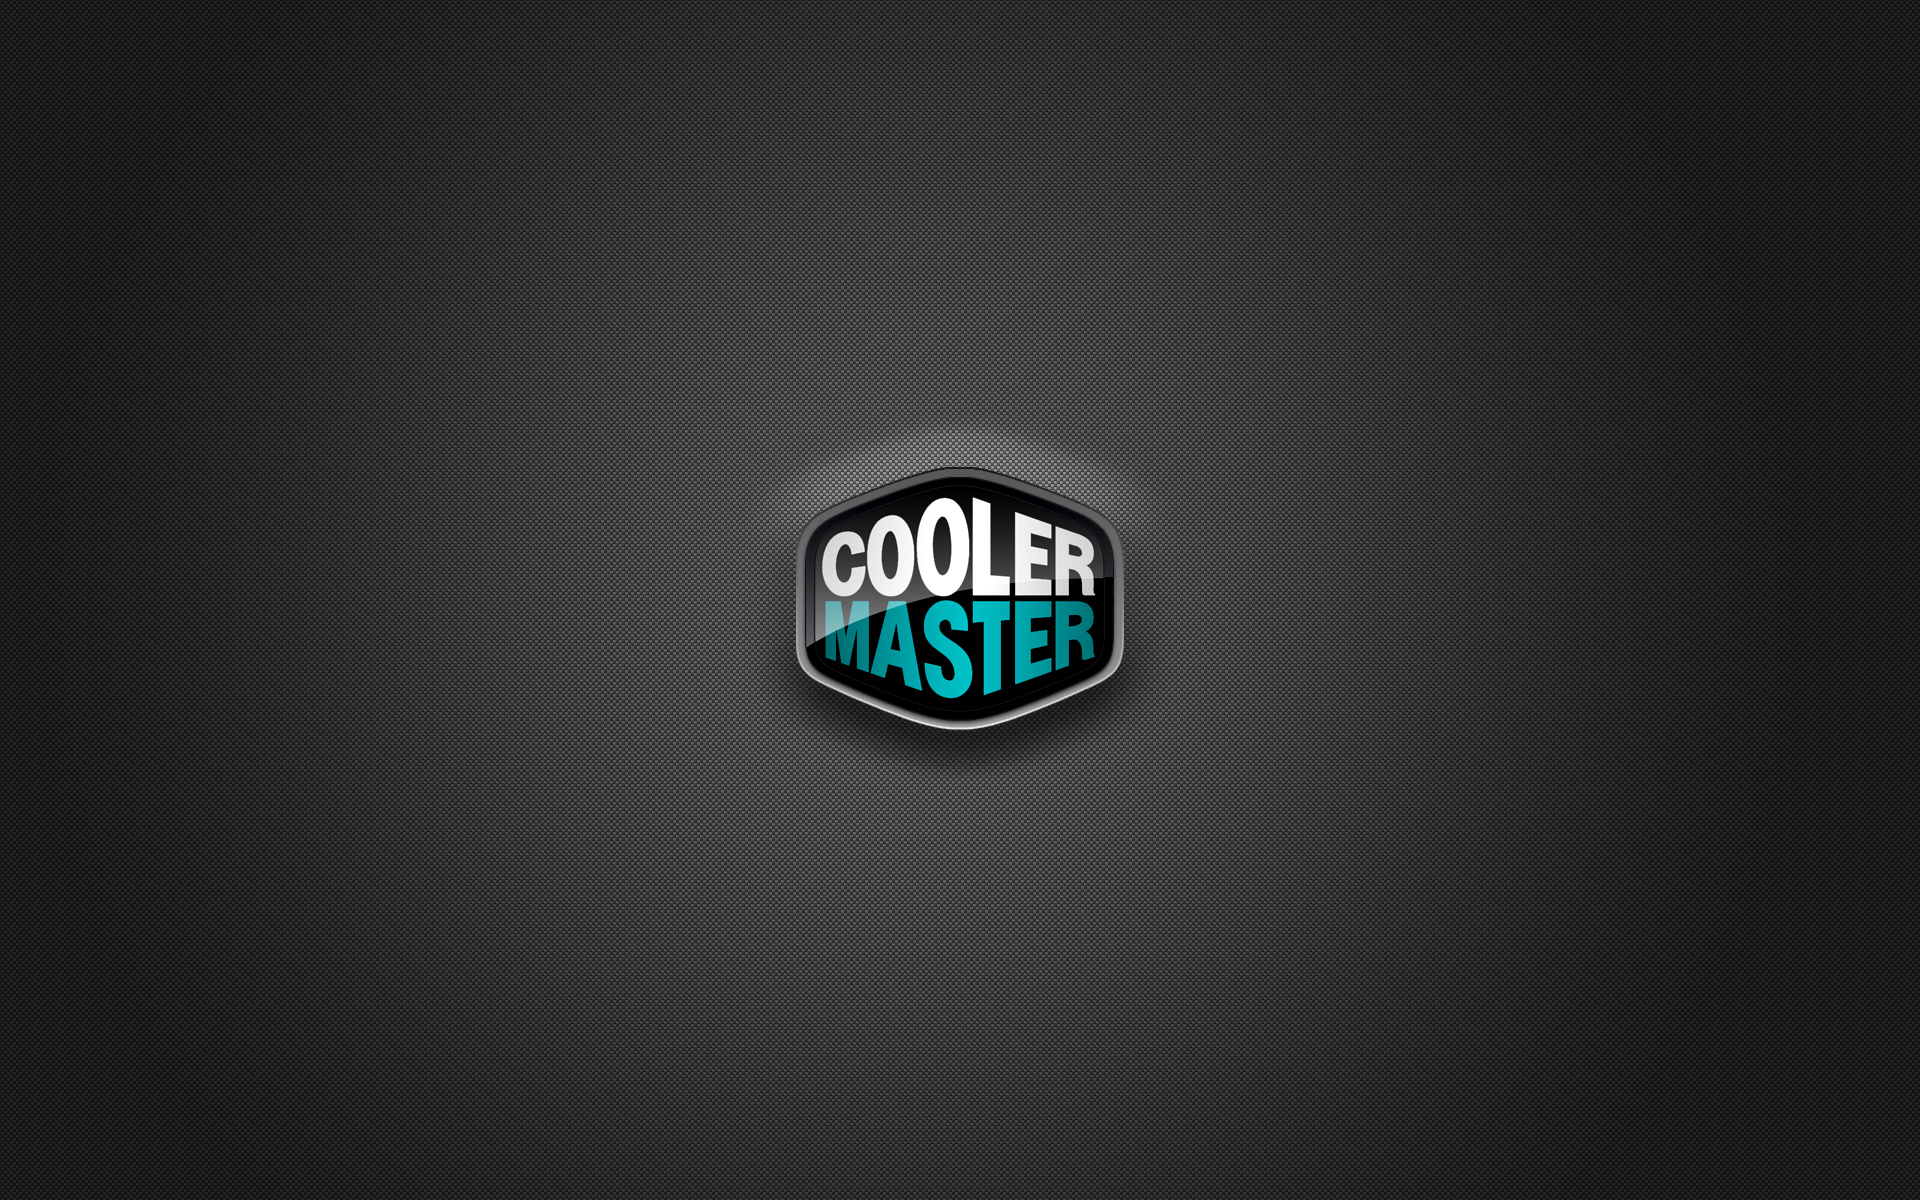 cooler_master_by_mullet-d3eq47y.jpg